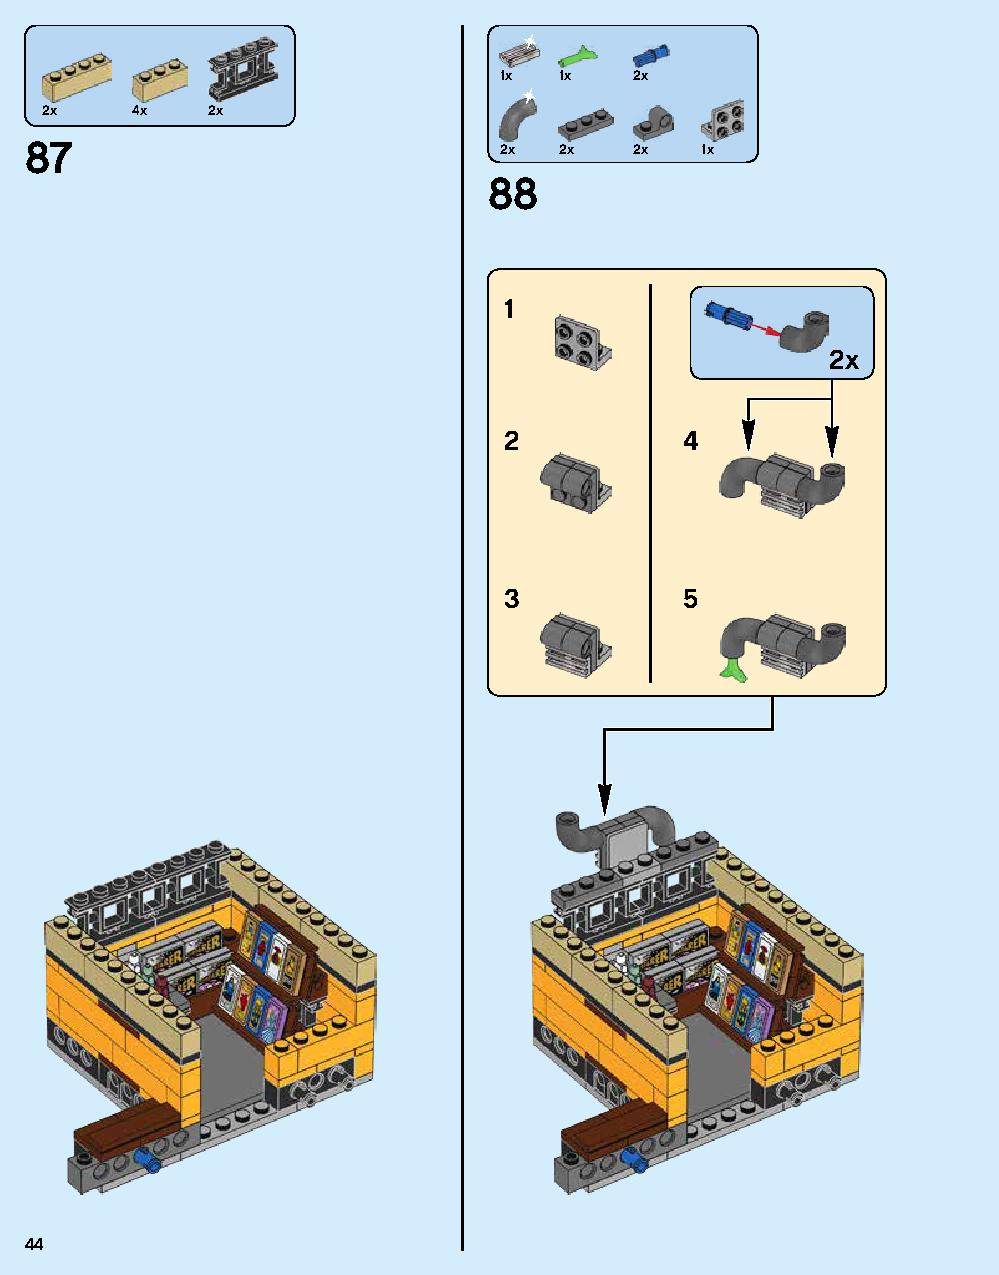 ニンジャゴー シティ 70620 レゴの商品情報 レゴの説明書・組立方法 44 page